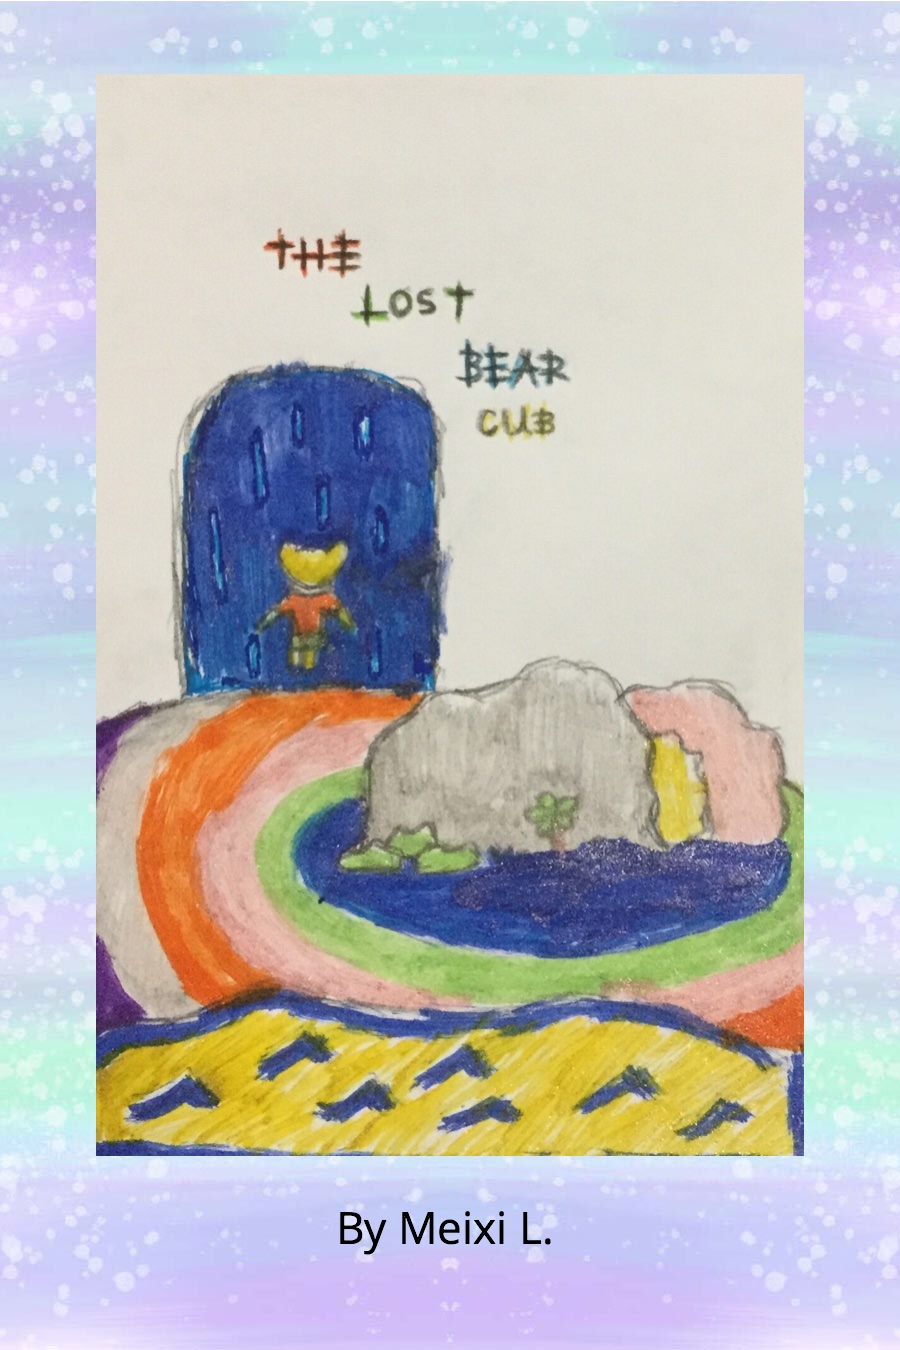 The Lost Bear Cub By Meixi L (1)